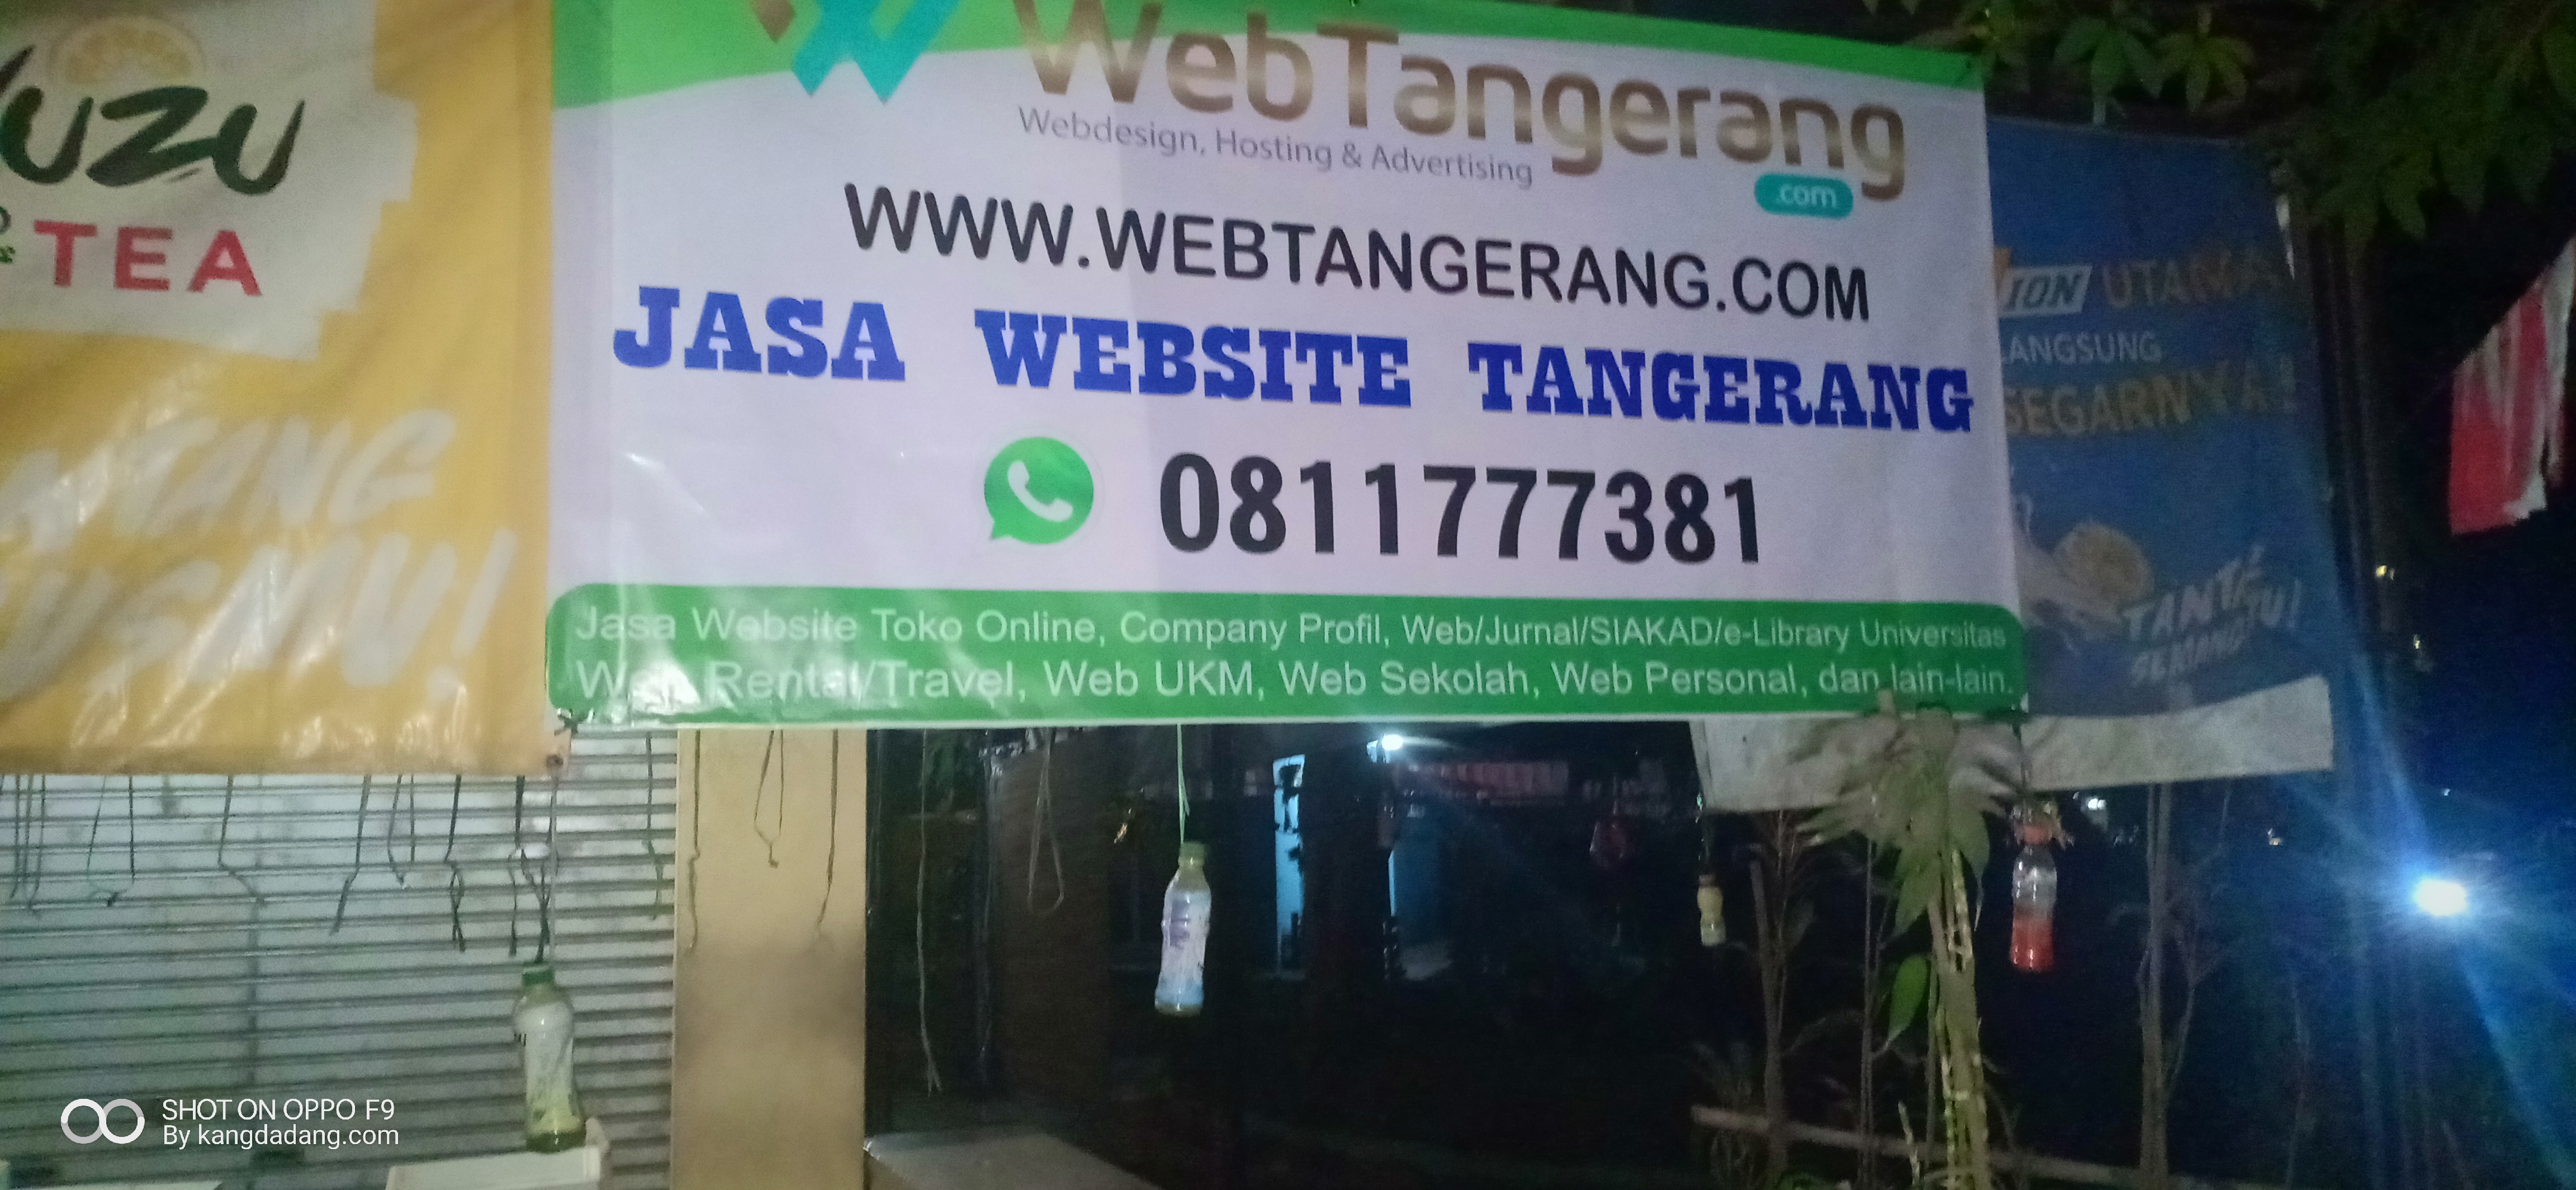 webtangerang.com